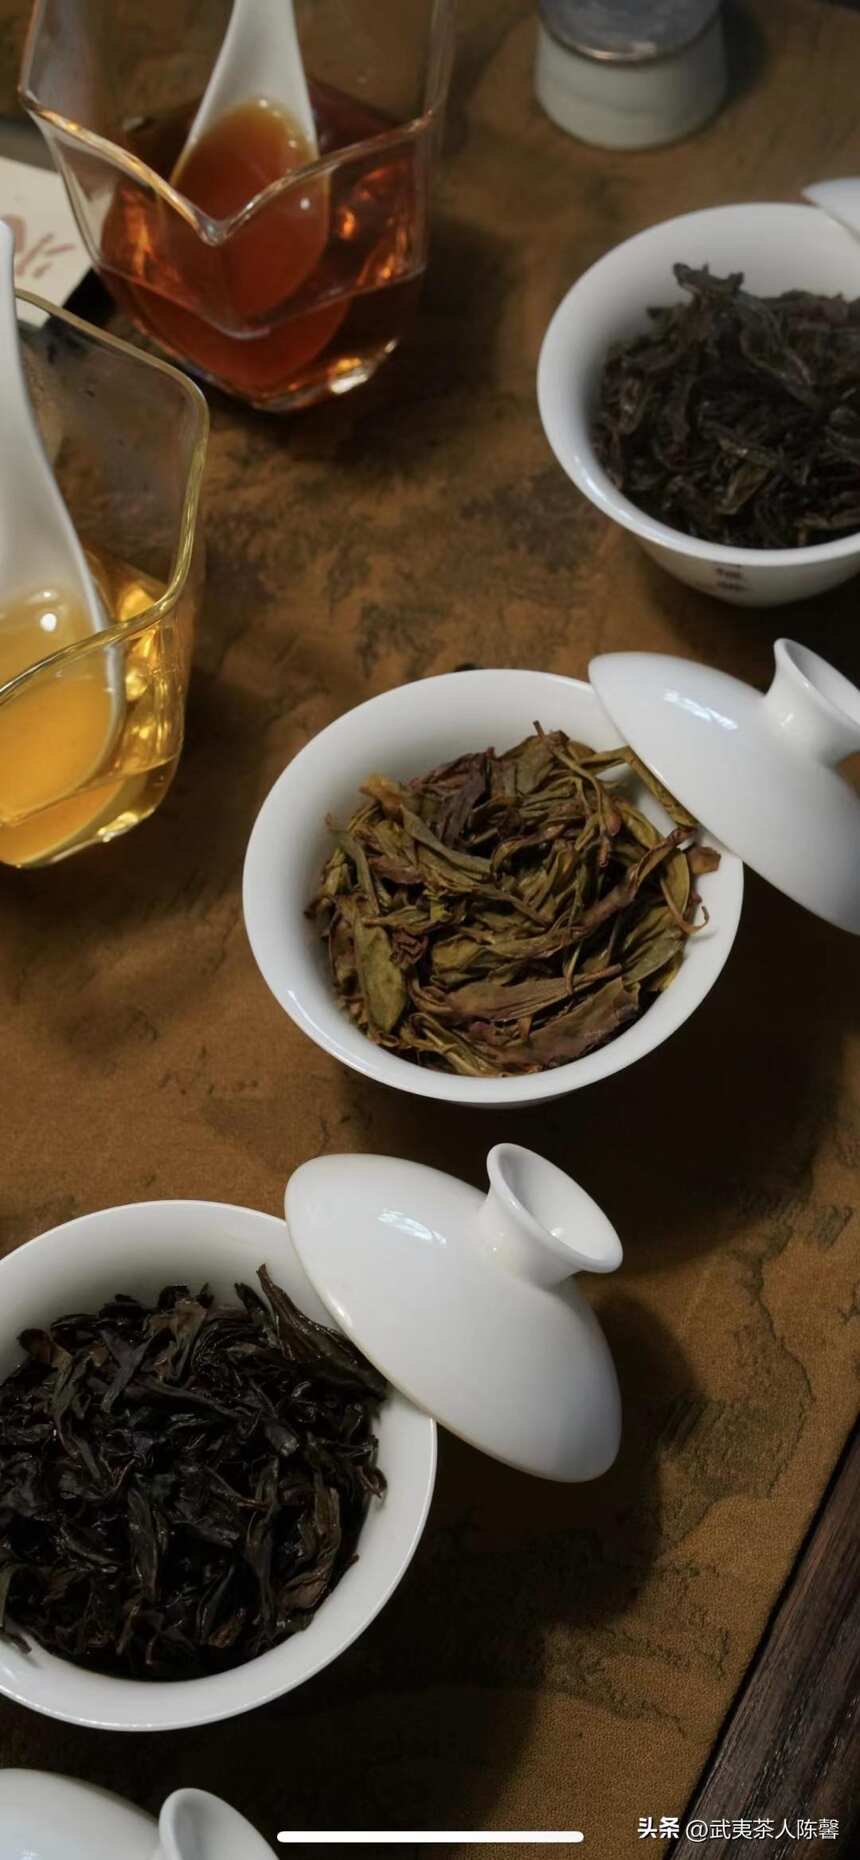 茶文化 | 客来敬茶，以茶会友